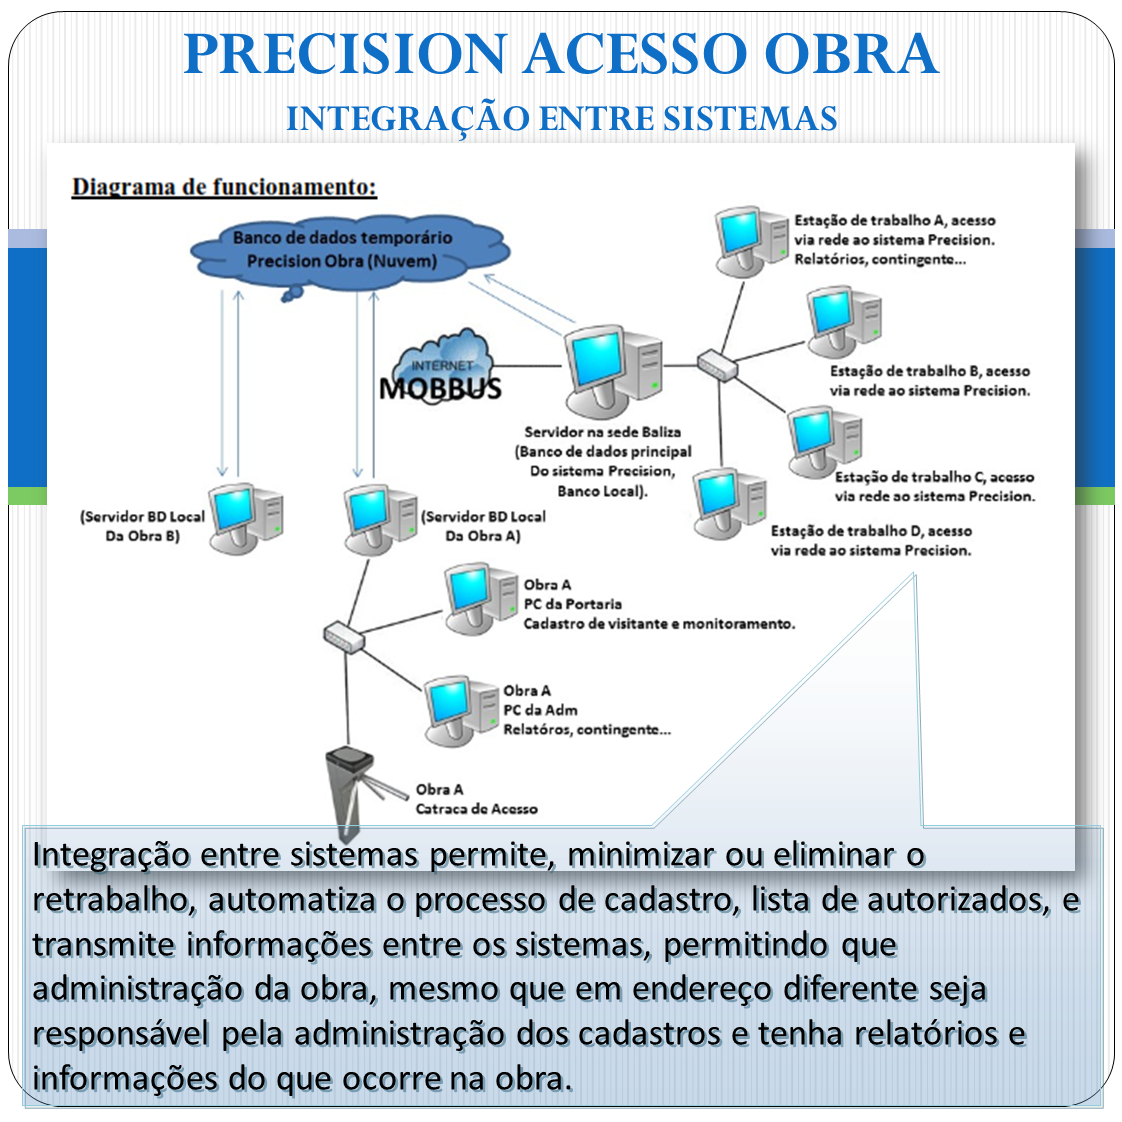 Precision Acesso Obra - Software p/ Obras